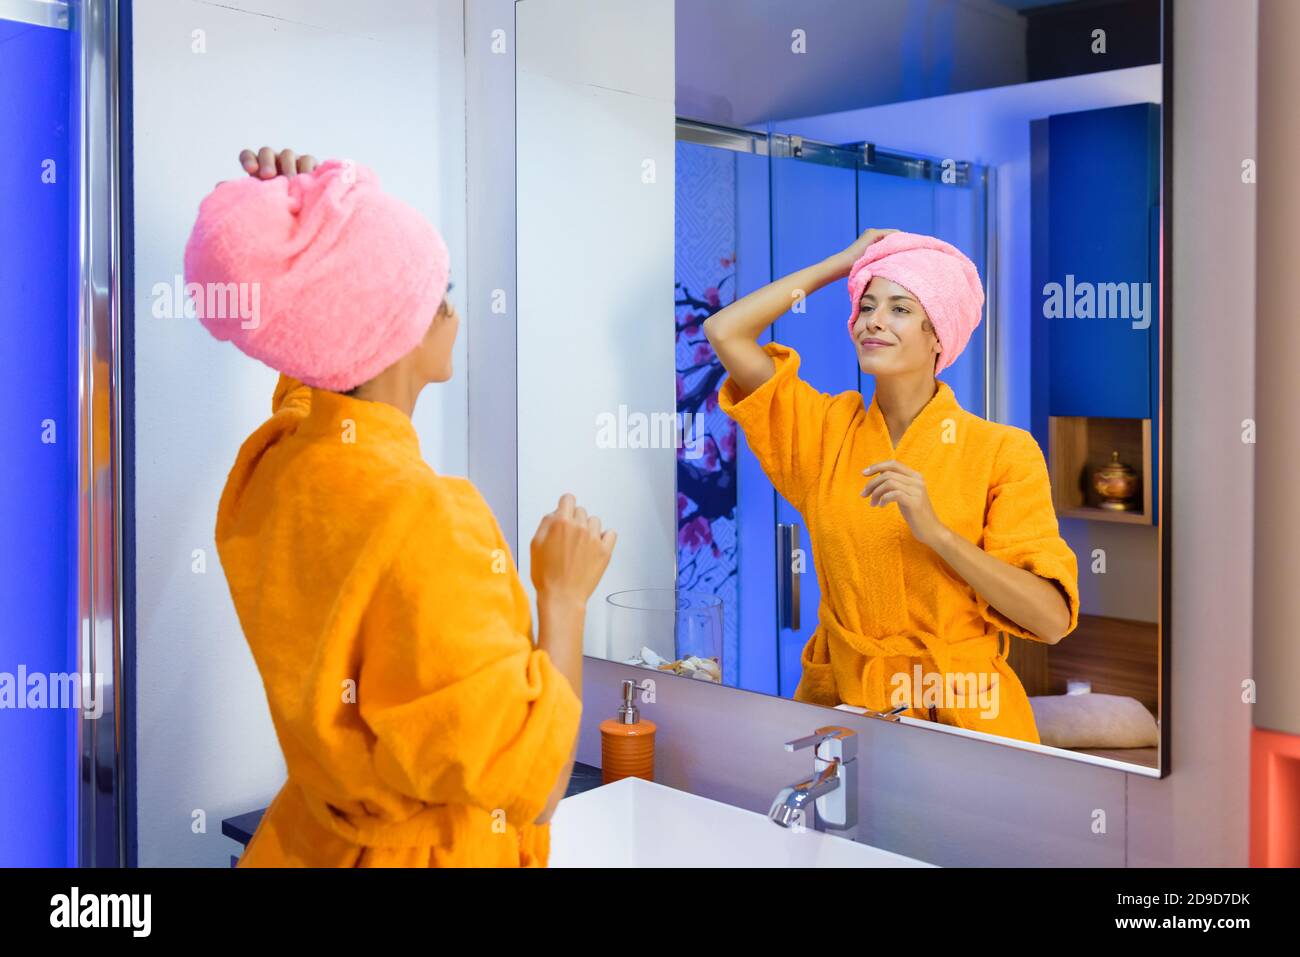 Junge Frau trägt einen leuchtend orangefarbenen Bademantel mit ihr Haare in einem Handtuch nach dem Duschen Blick auf sich in Ein Badezimmerspiegel mit einem ruhigen s Stockfoto